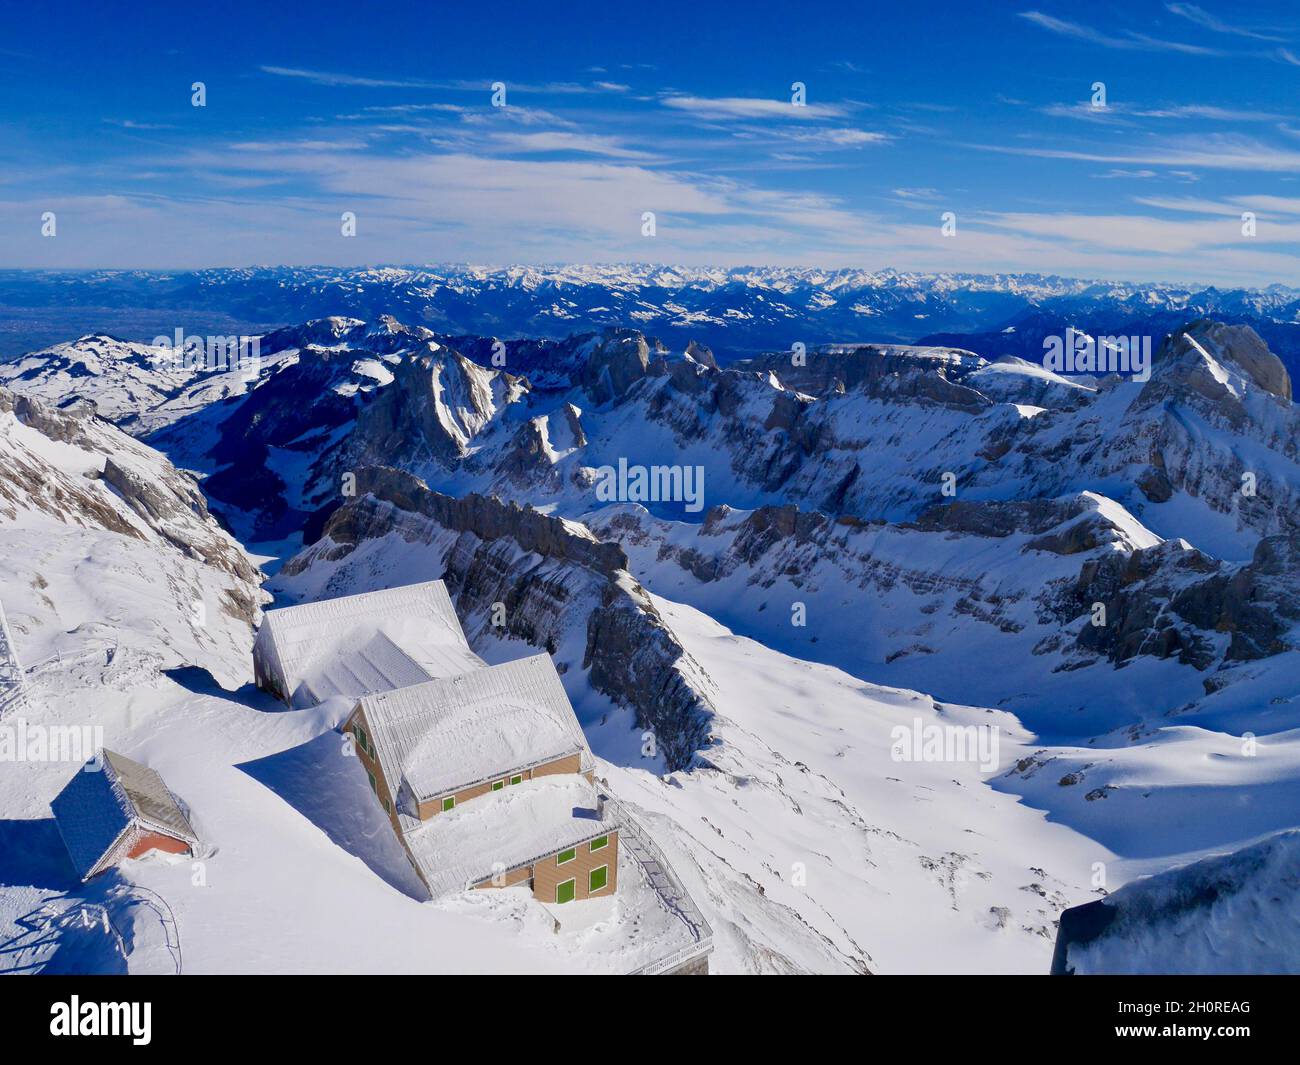 Spektakuläre Aussicht auf Alpstein und das Berggasthaus Alter Saentis von  der Bergstation der Seilbahn Saentis aus gesehen. Appenzell, Schweiz  Stockfotografie - Alamy